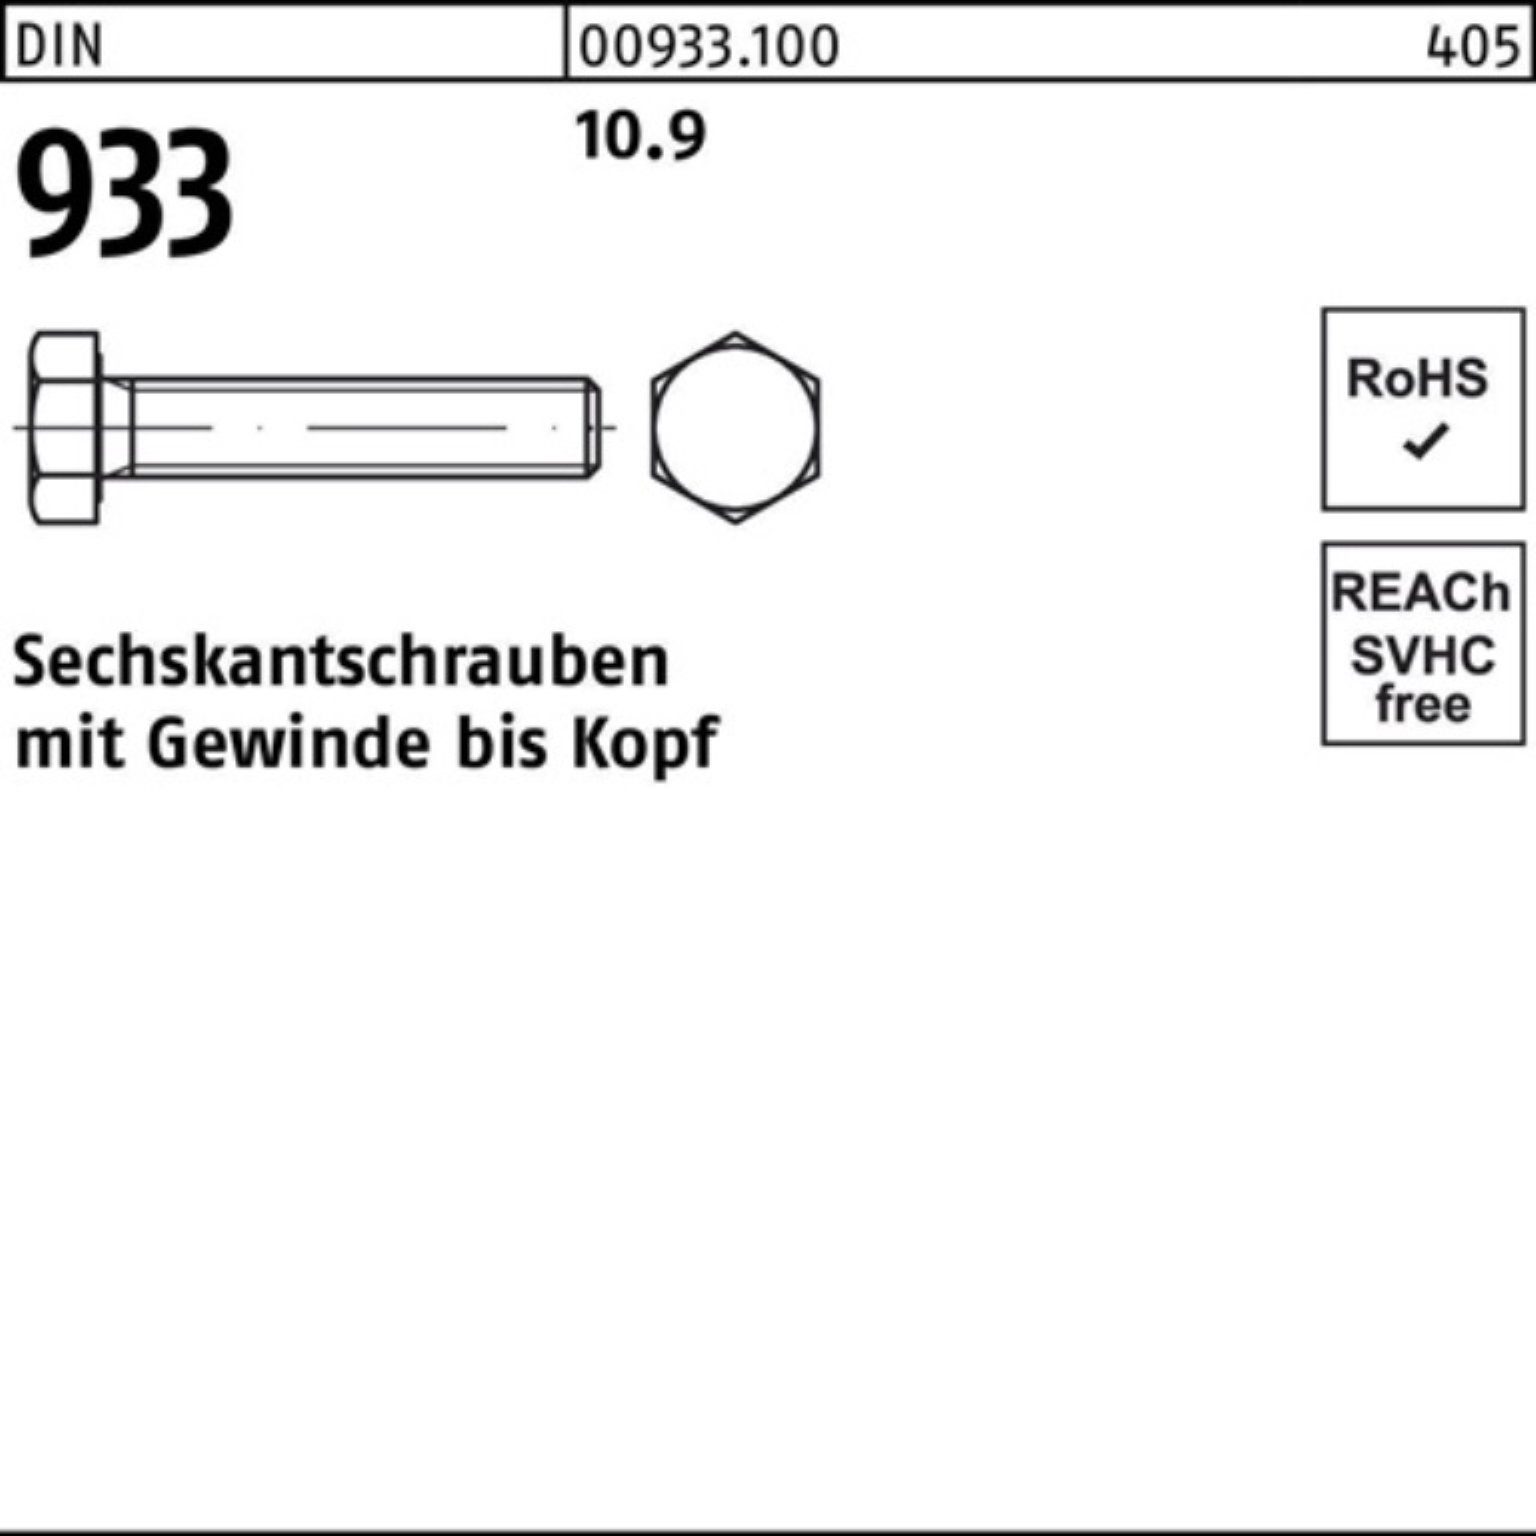 Reyher DIN 220 Sechskantschraube 933 DIN 10.9 933 1 VG 100er Sechskantschraube Stück M24x Pack